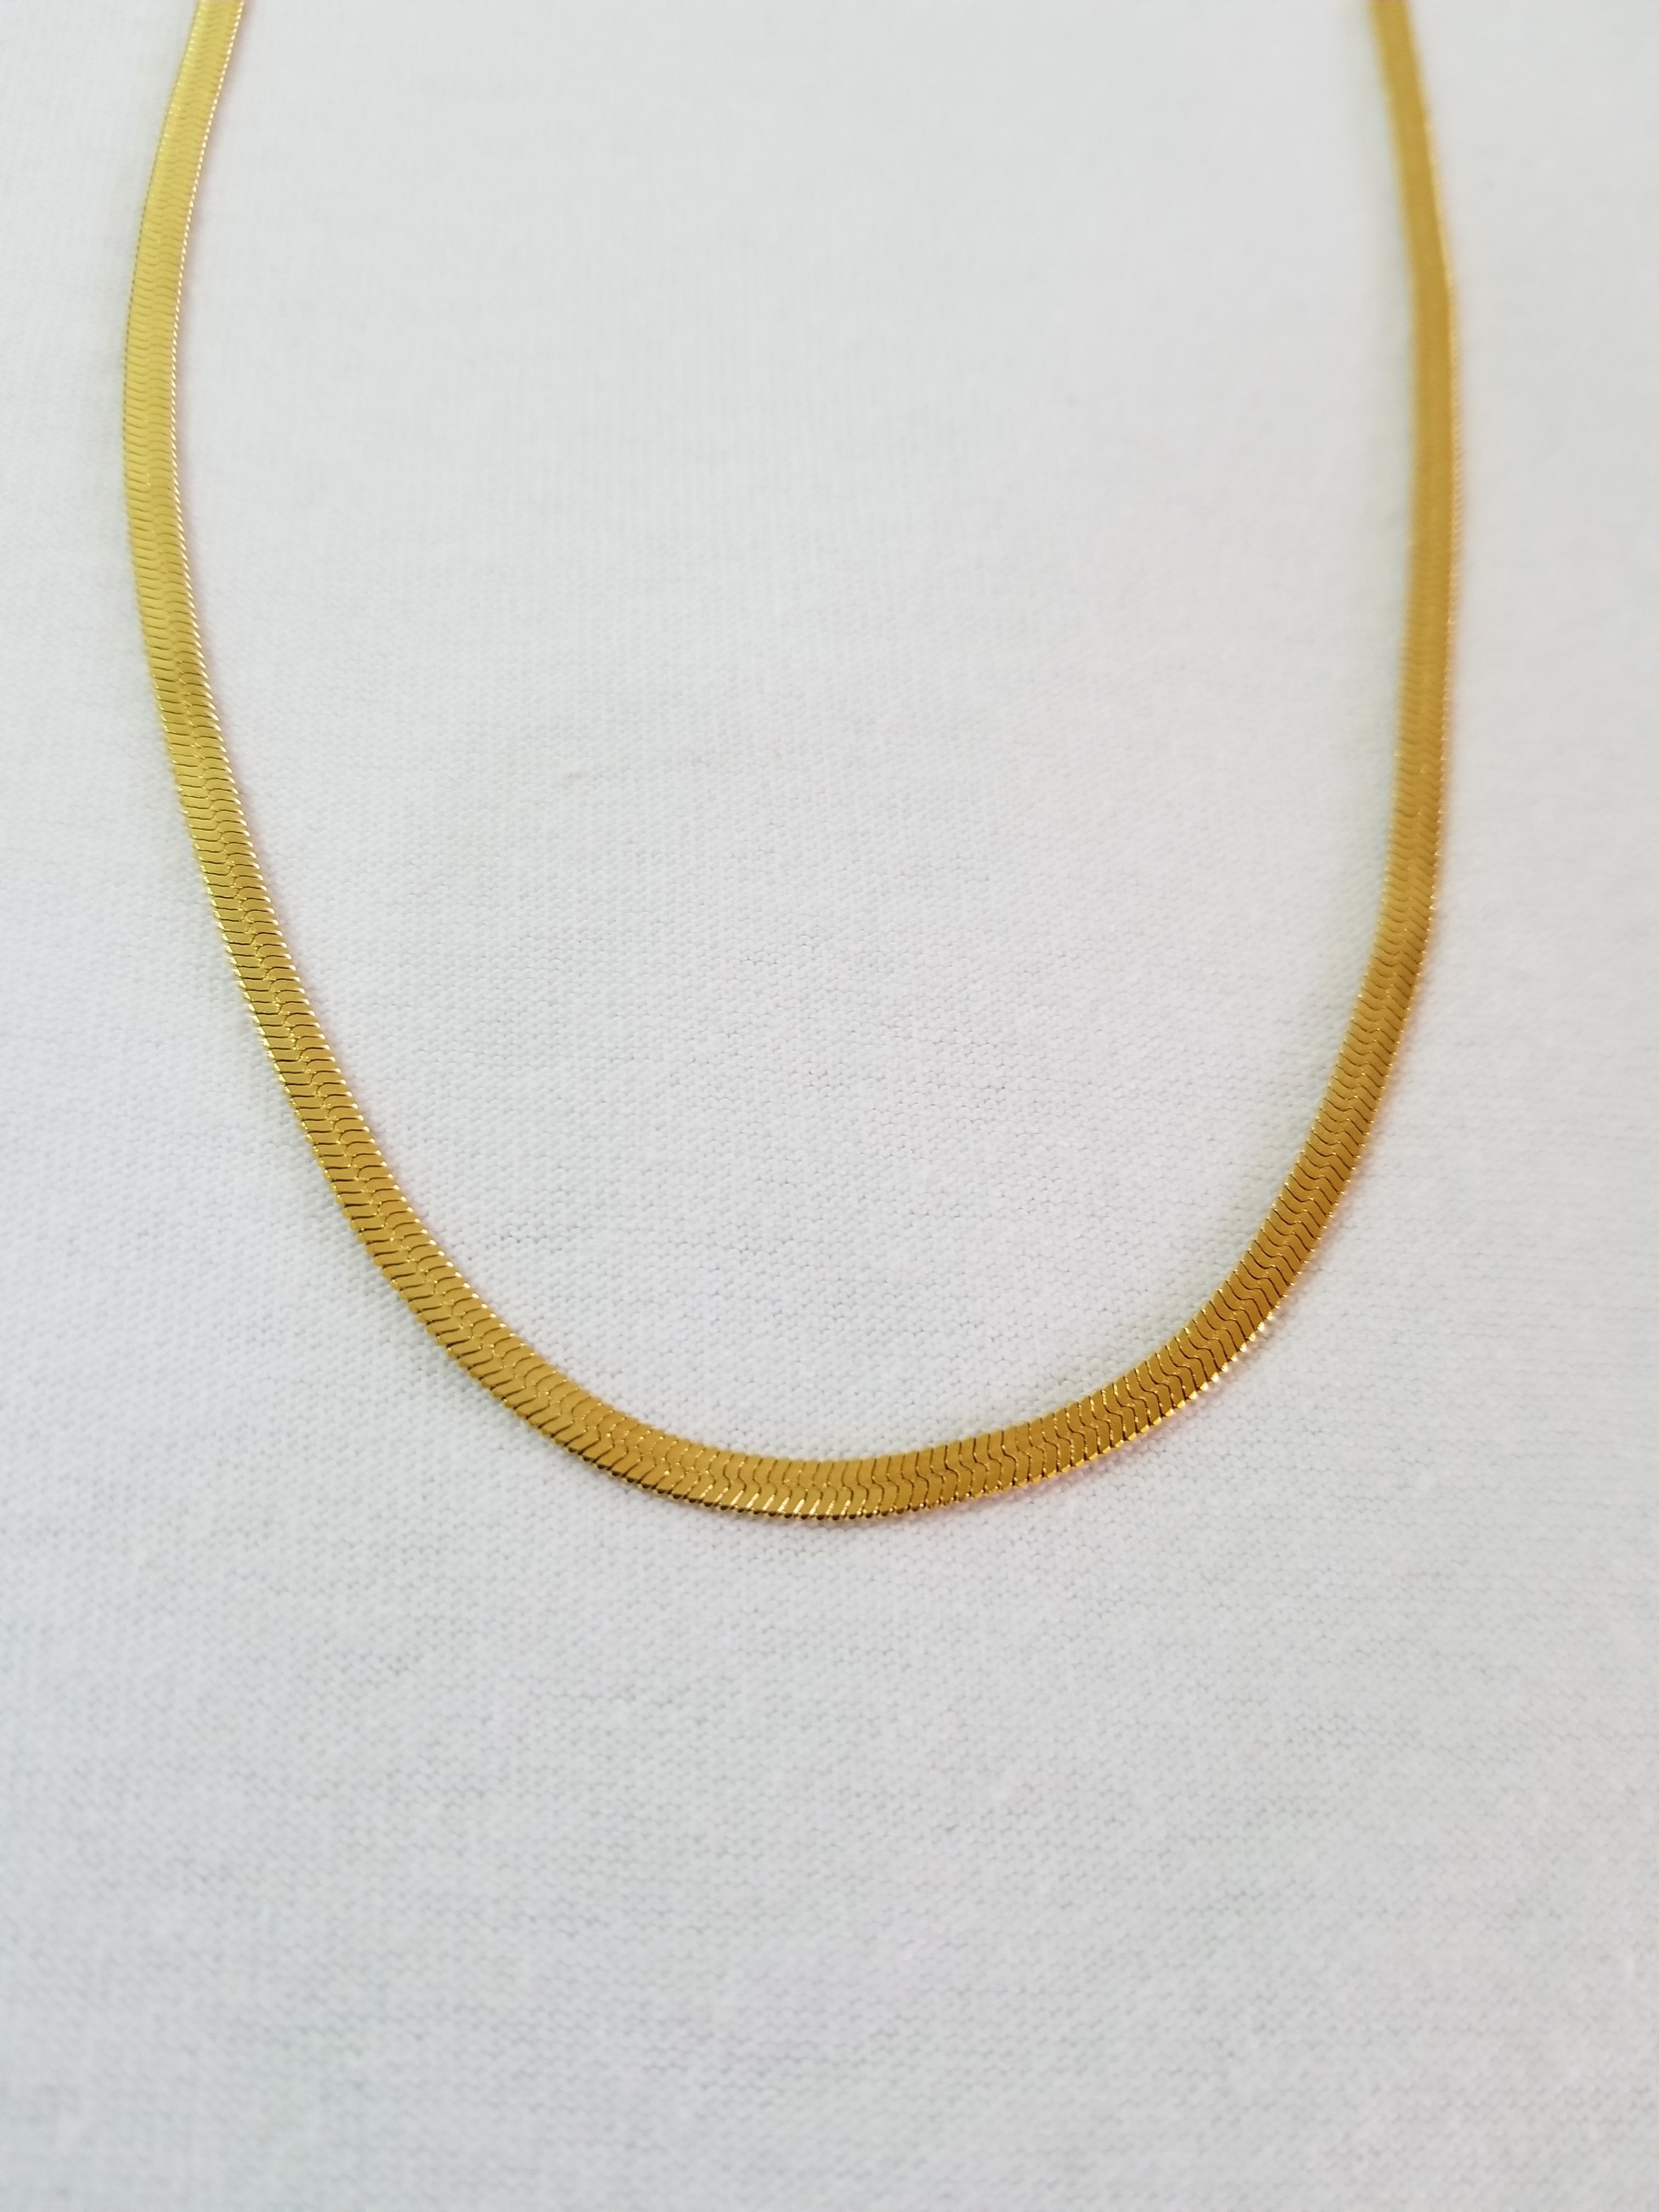 Cadena cola de serpiente plana dorada 3mm acero inoxidable